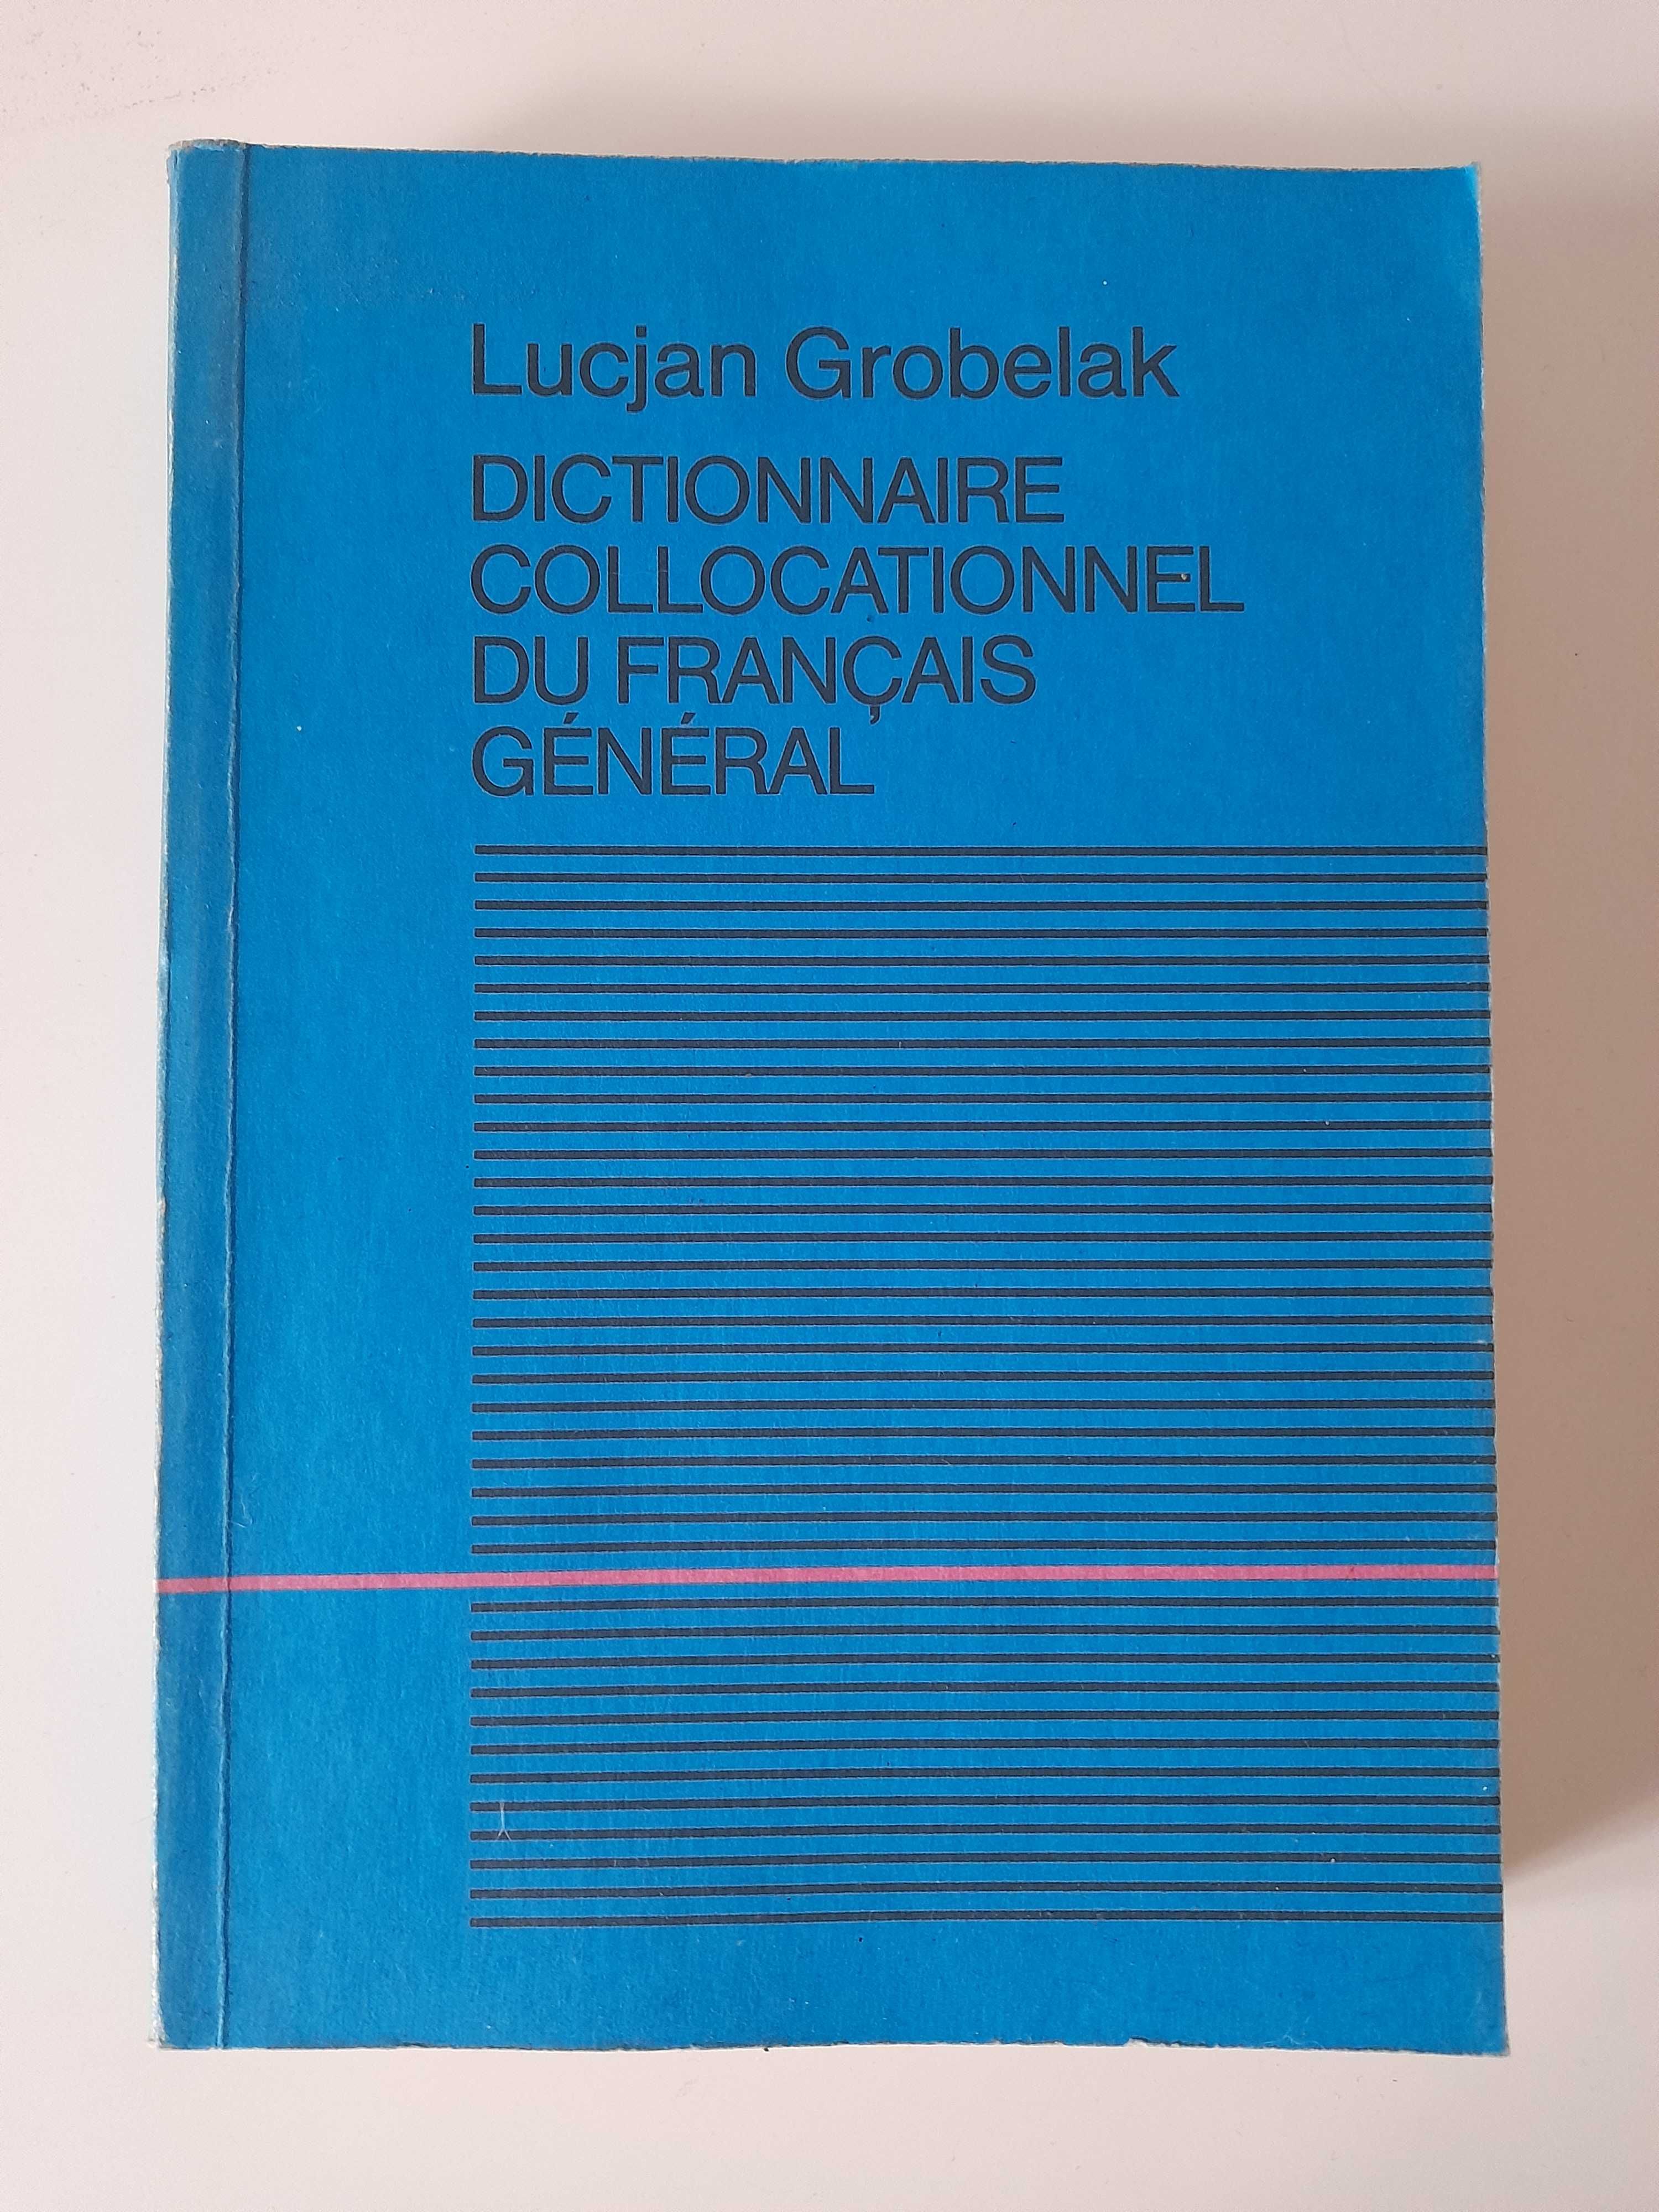 Doctionnaire Collocationnel du Francais General Lucjan Grobelak